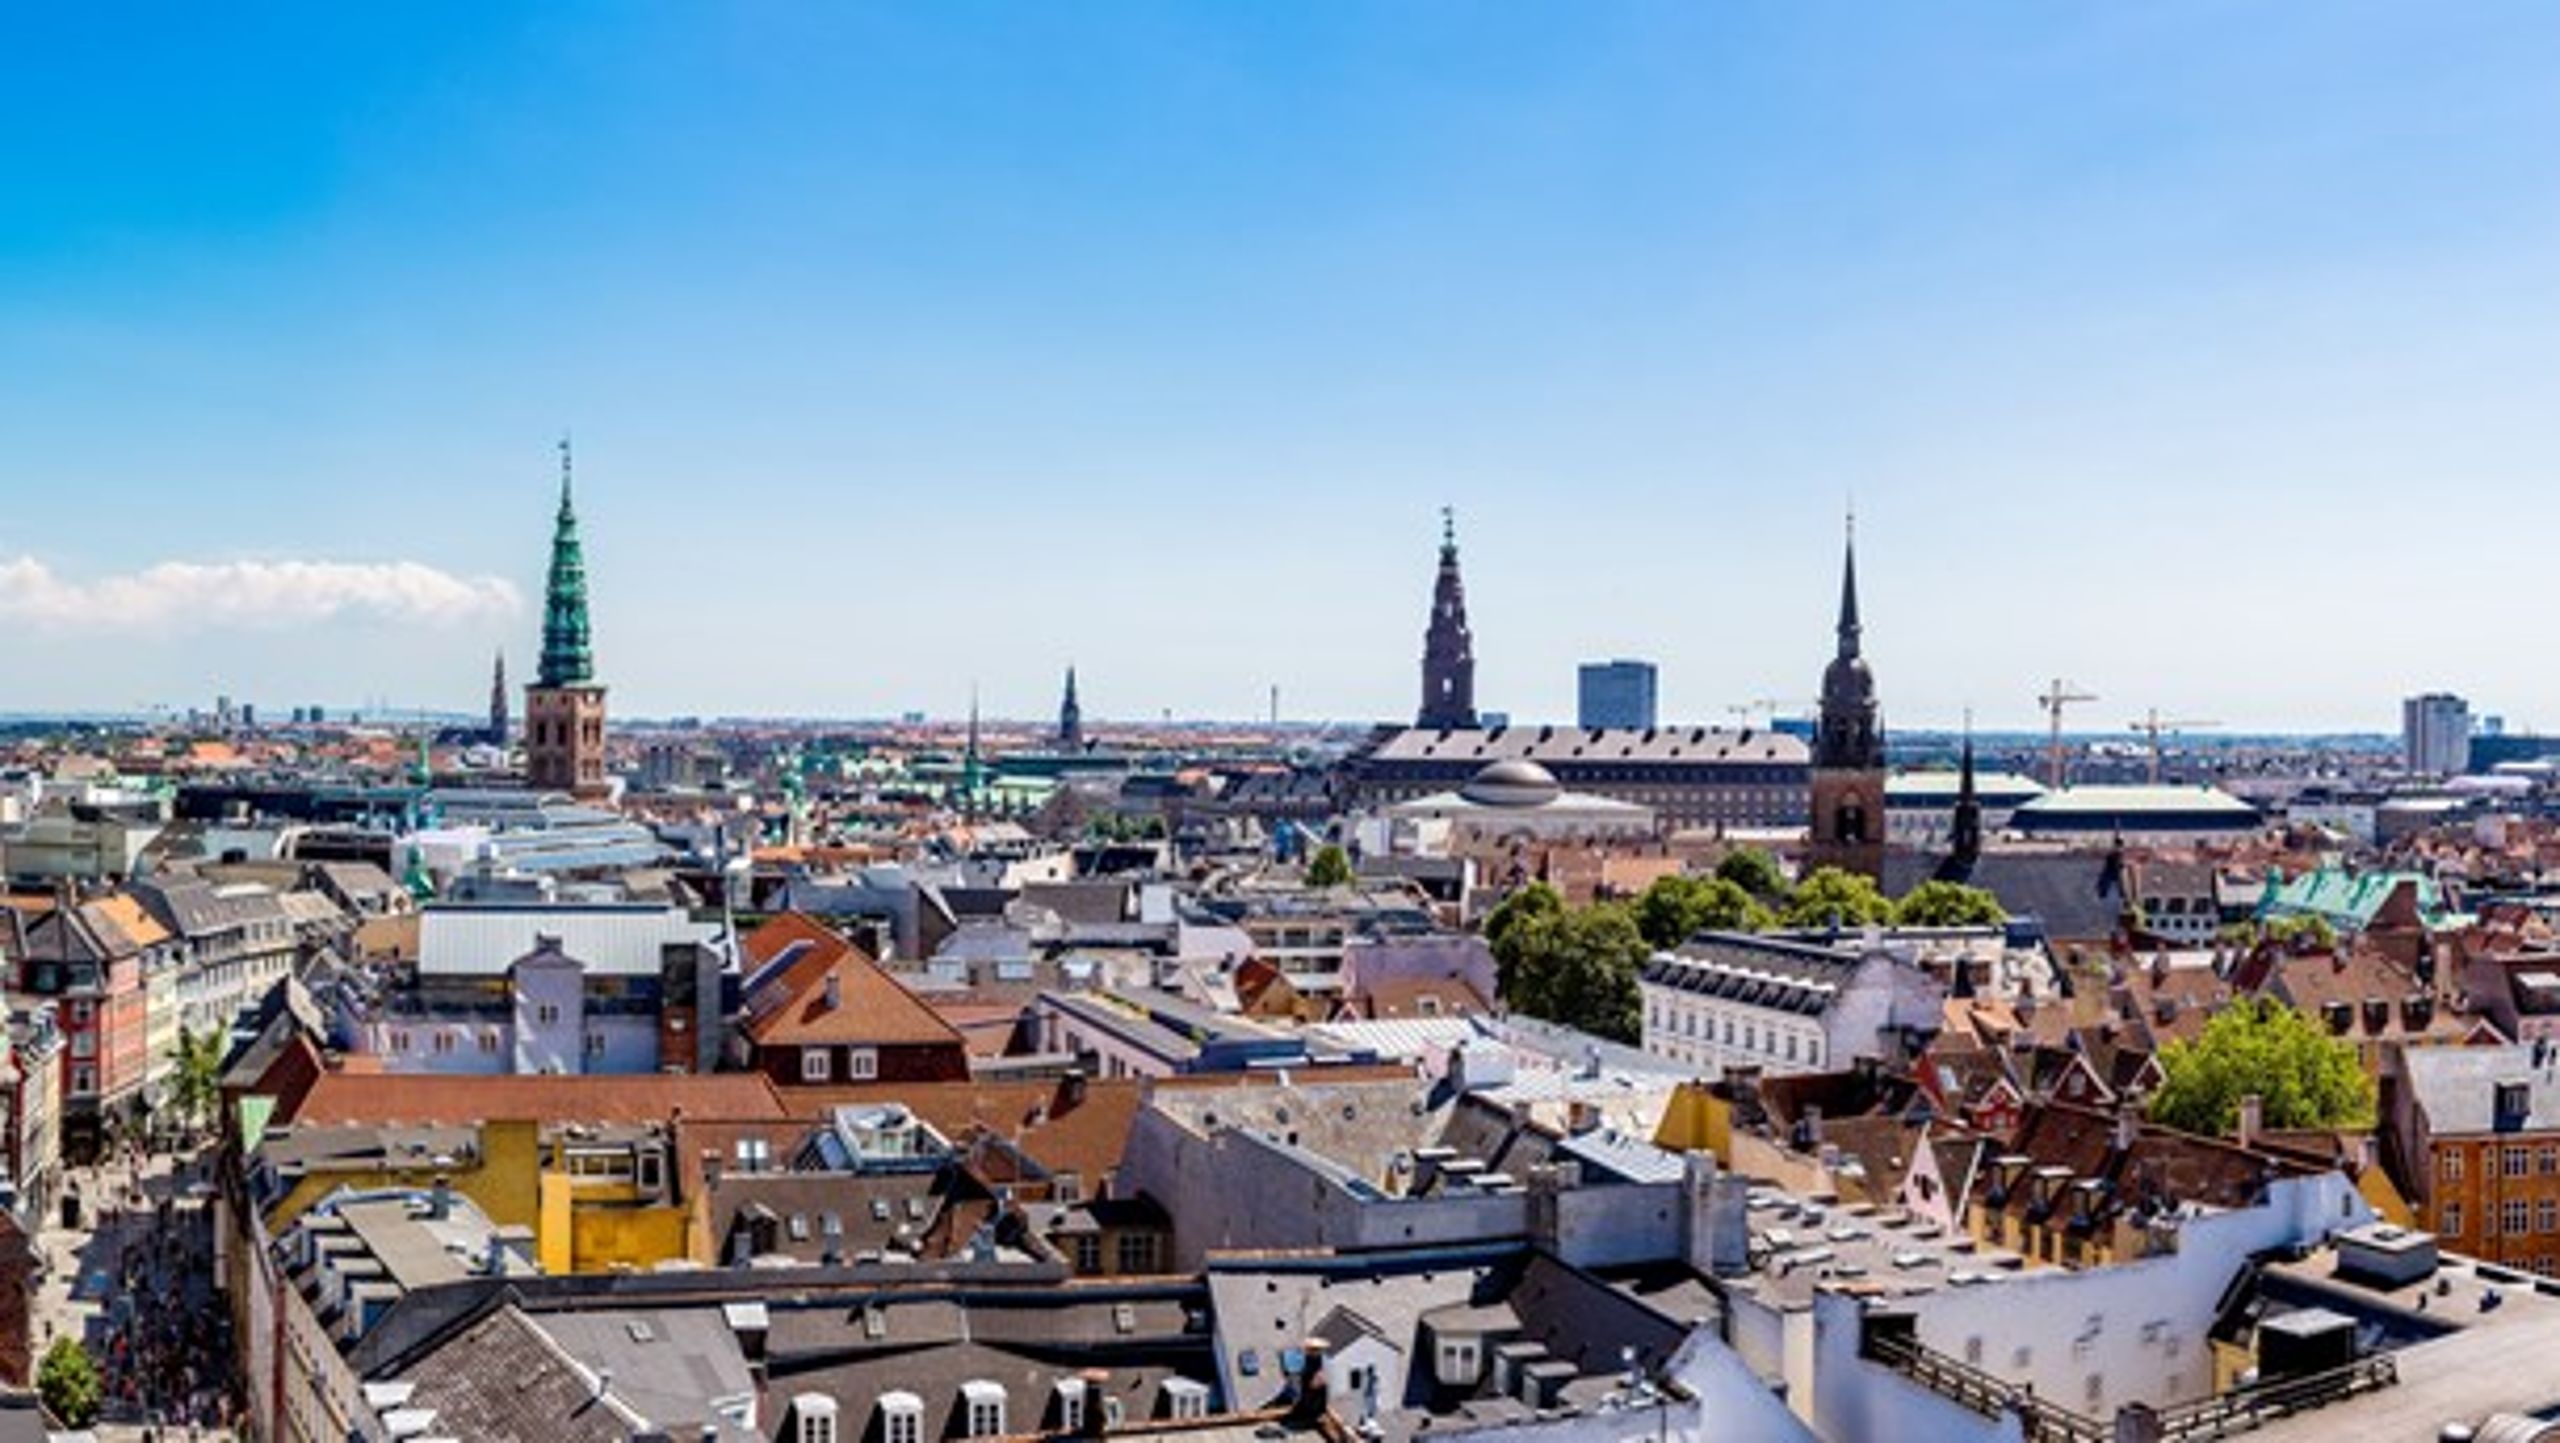 <b></b>Når jeg bliver gammel, vil jeg stadig bo i København – og gøre mere af alt det, jeg er glad for i byen og livet i dag. Det kræver, at København stadig er min by og har øje for alle os, der bliver gamle i en ikke så fjern fremtid, skriver Caroline Beck.